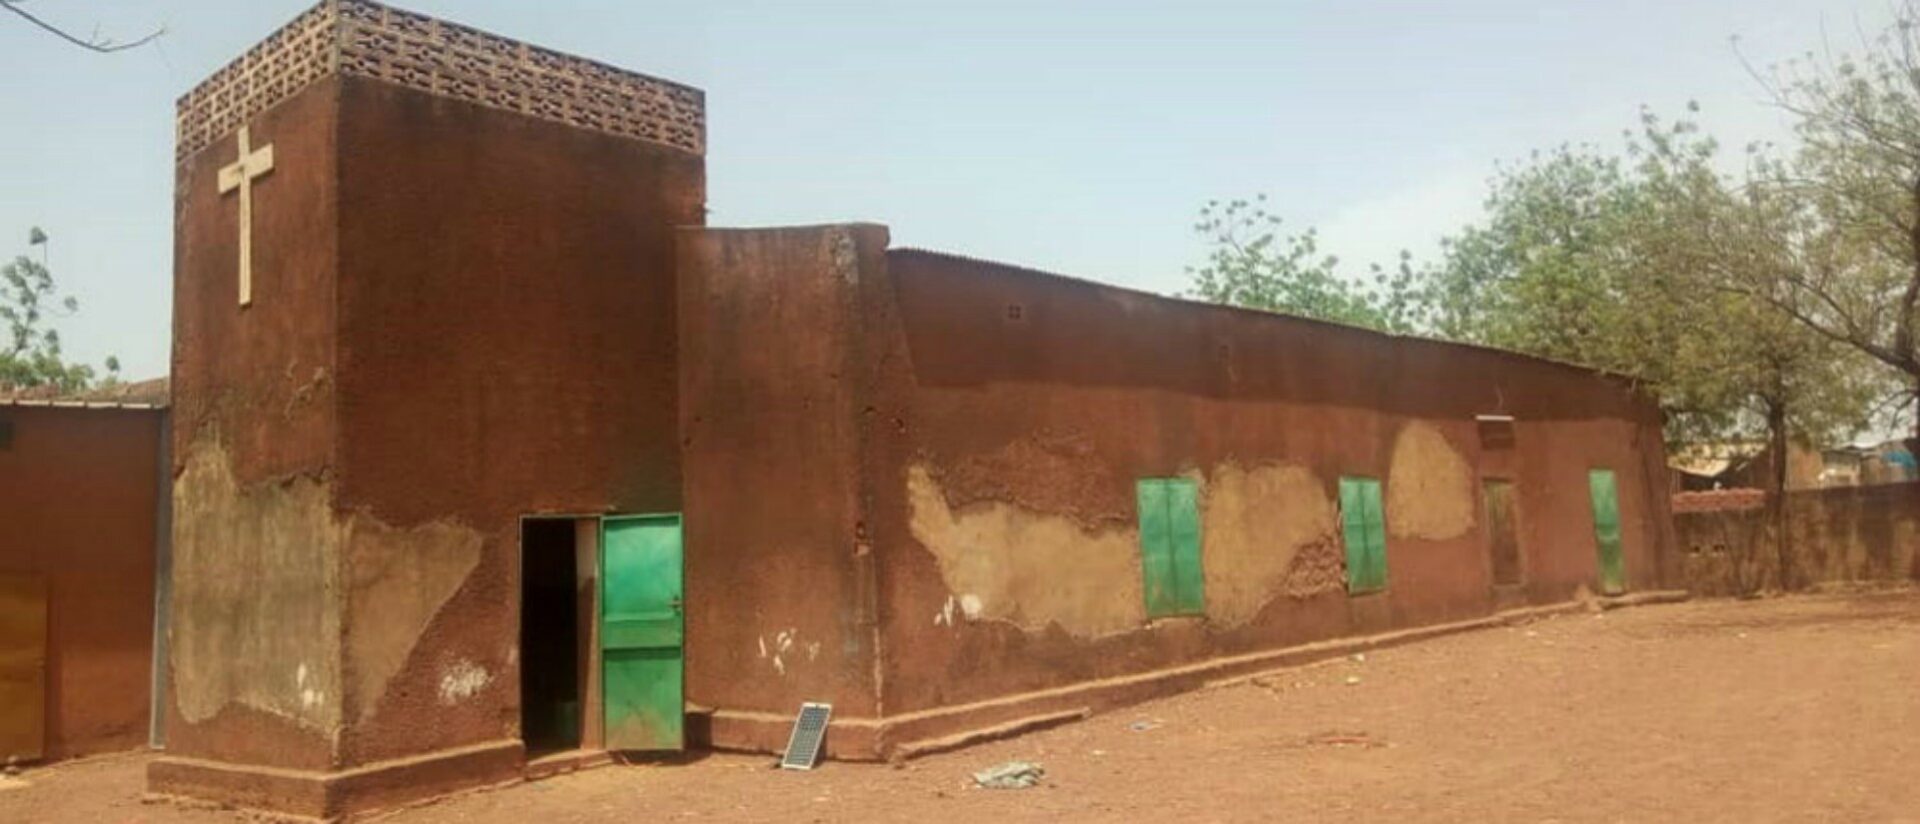 Les lieux de culte de différentes confessions au Burkina-Faso sont désormais pris pour cible par les djihadistes | © Portes Ouvertes